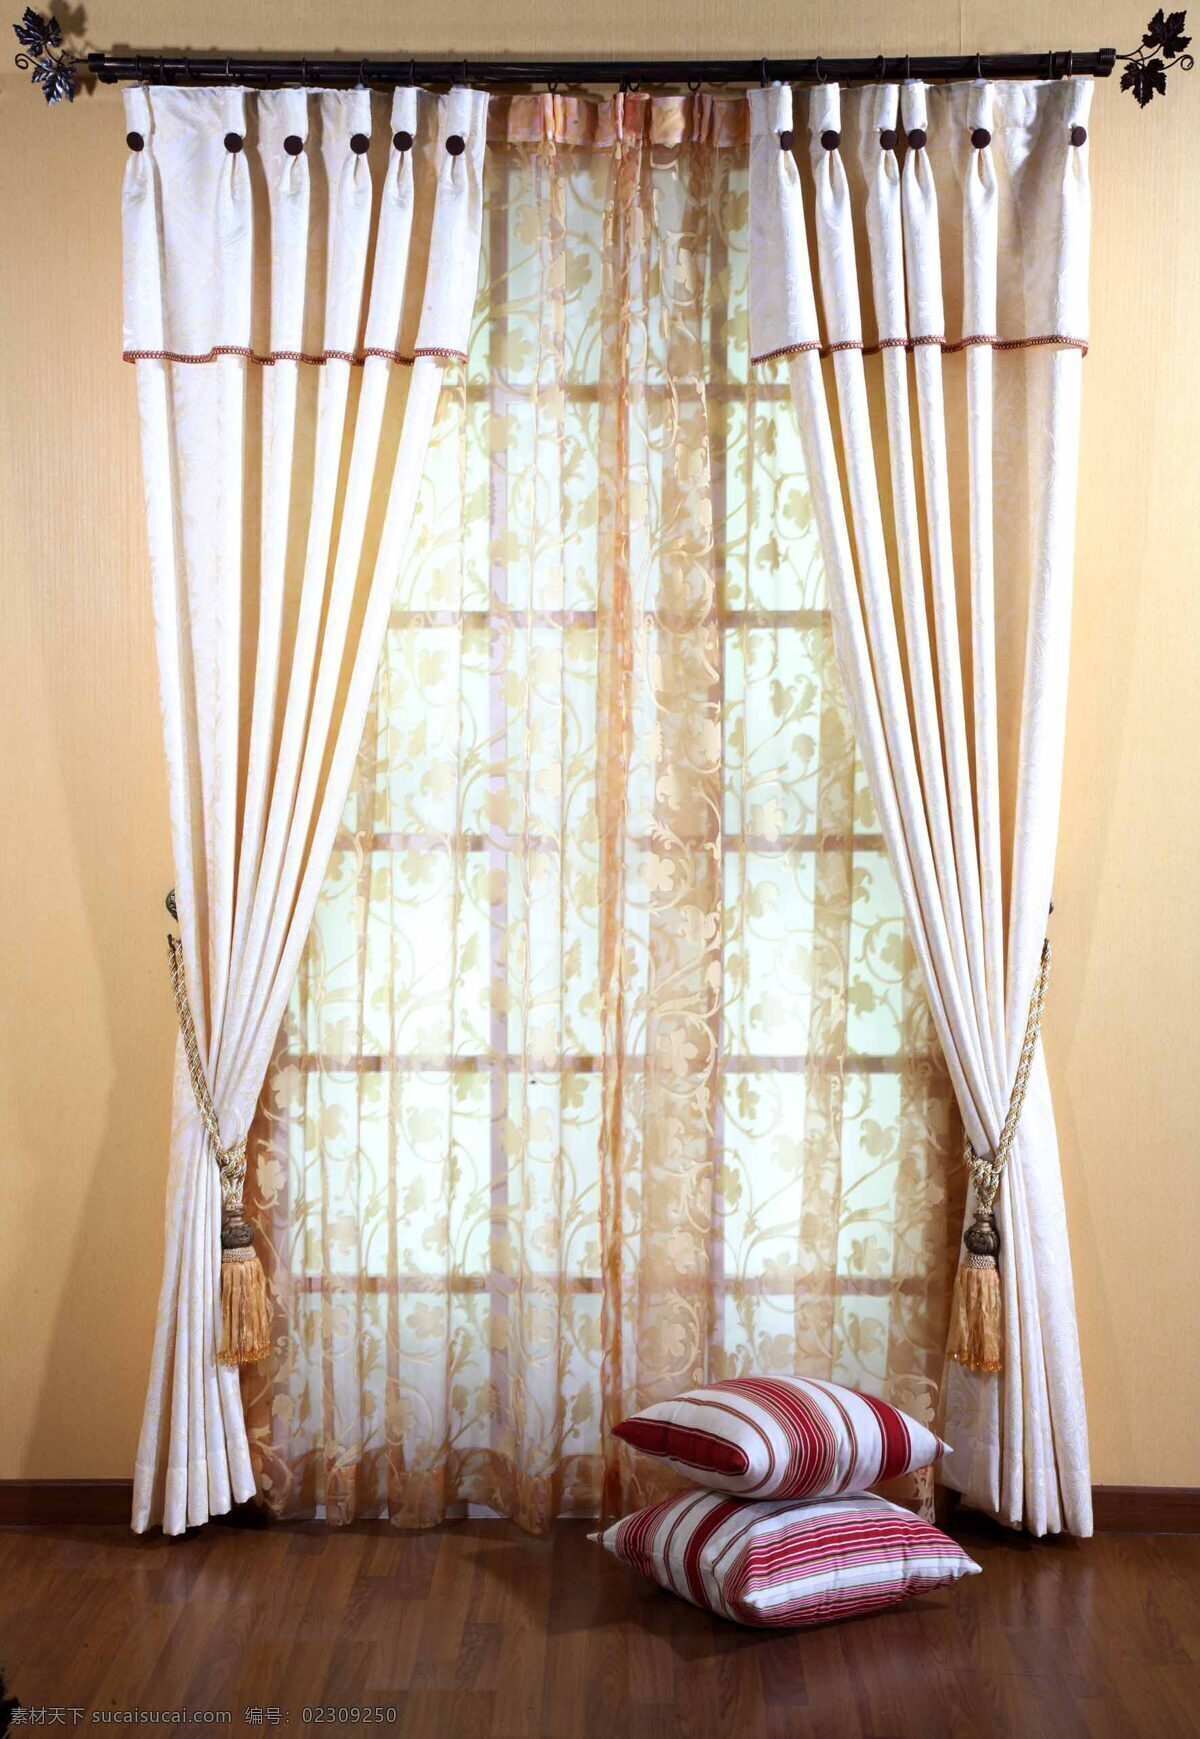 漂亮的窗帘 窗户 窗帘 枕头 地面 墙面 生活百科 家居生活 摄影图库